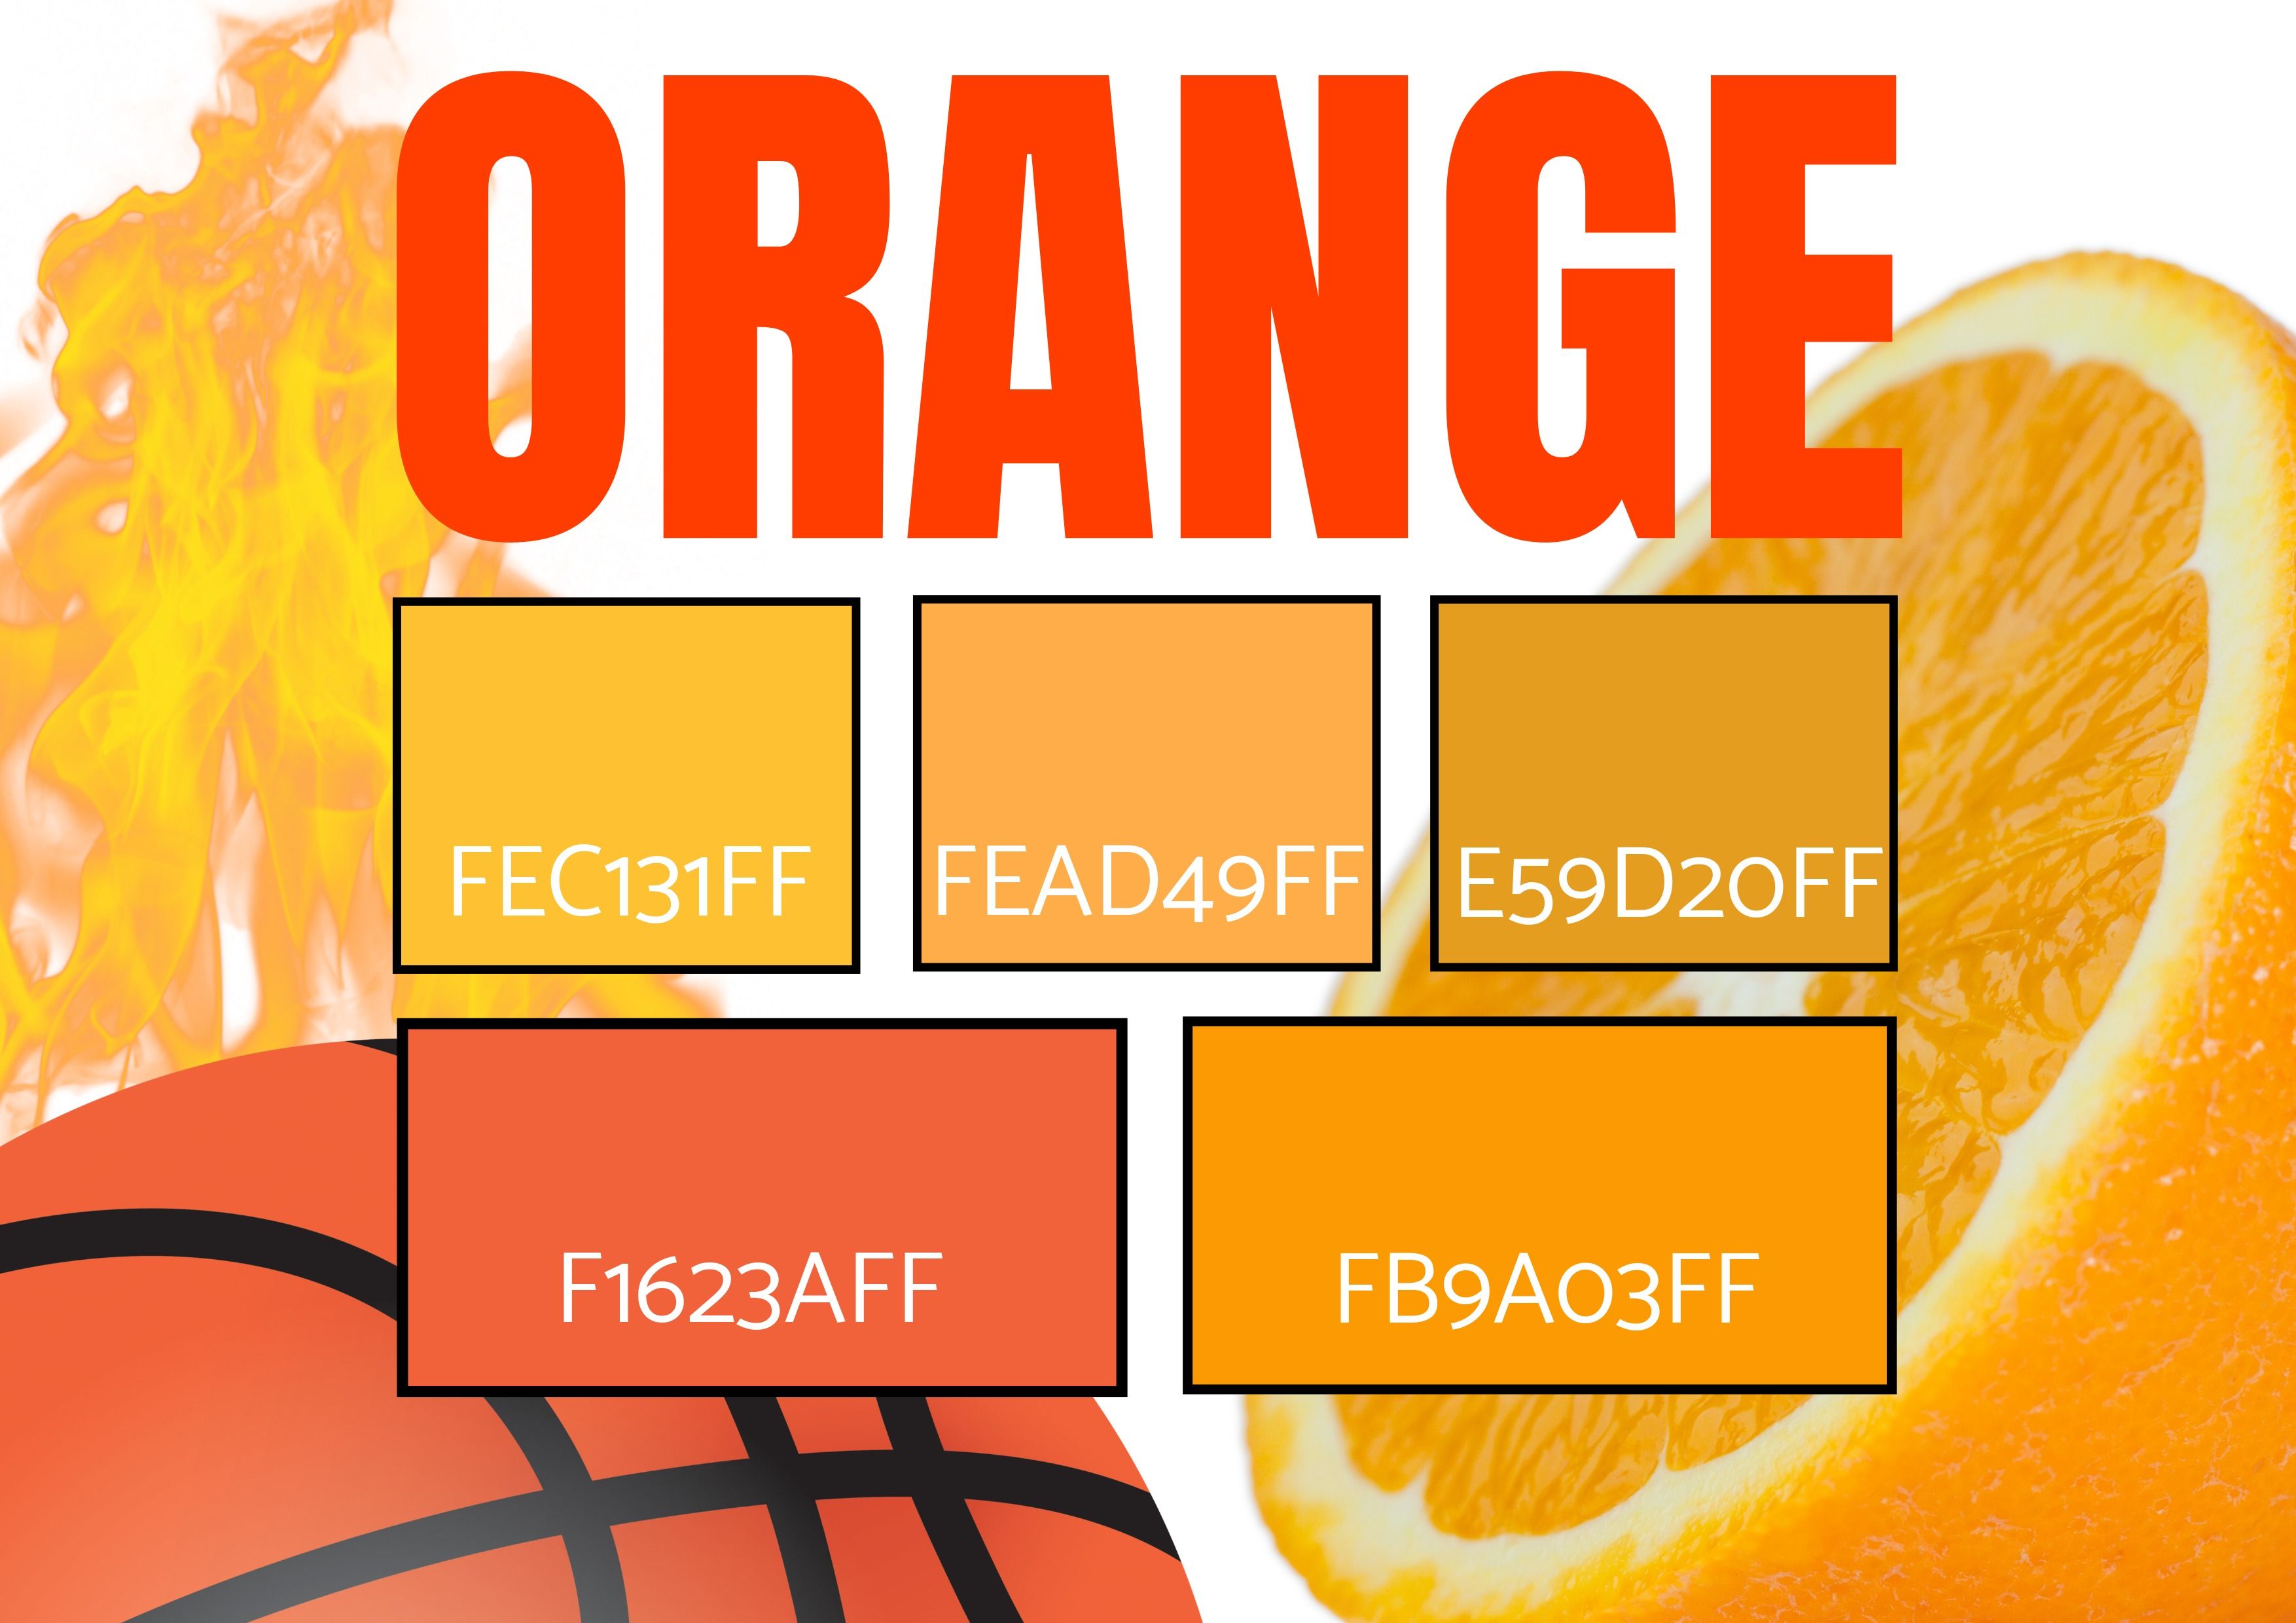 Auswahl von 5 Orangetönen mit Bildern von Feuer, einem Basketball und einer Orange – Symbolik